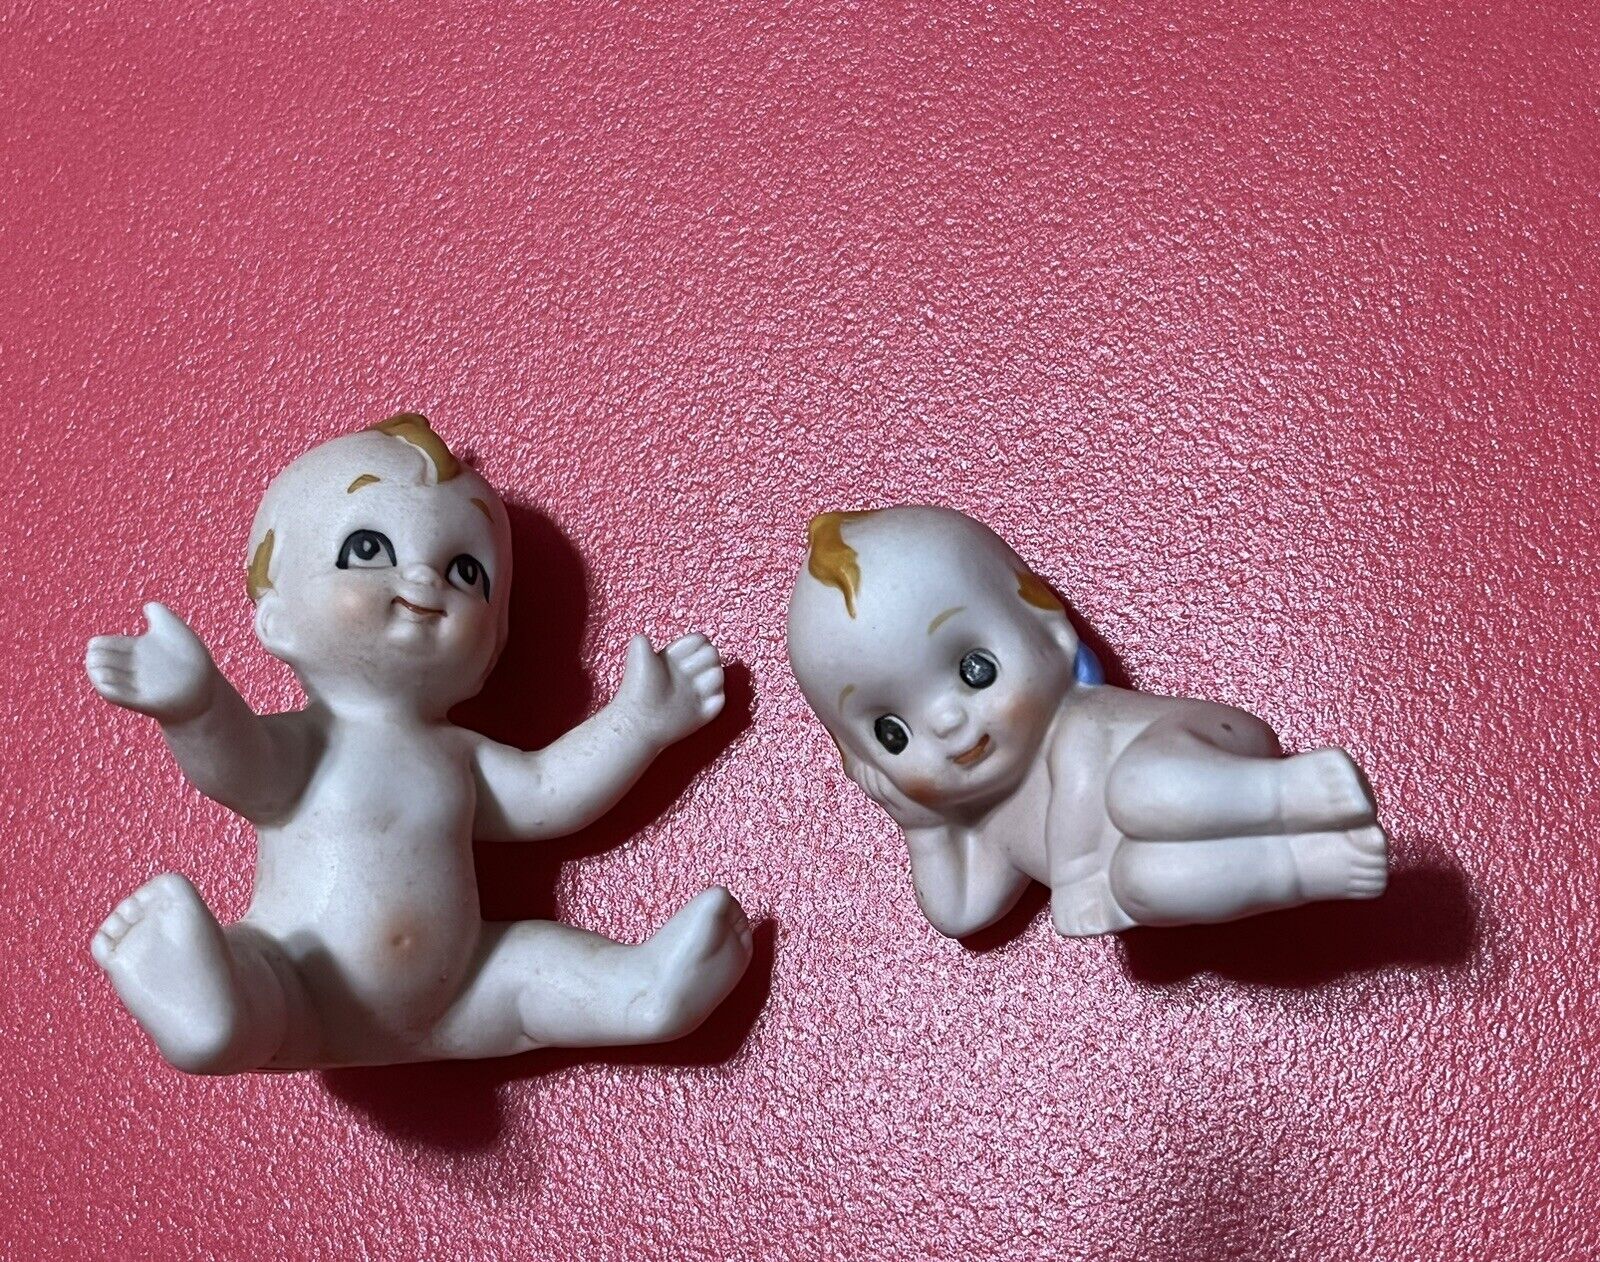 2 Vintage Kewpie Ceramic Baby Figure Figurines